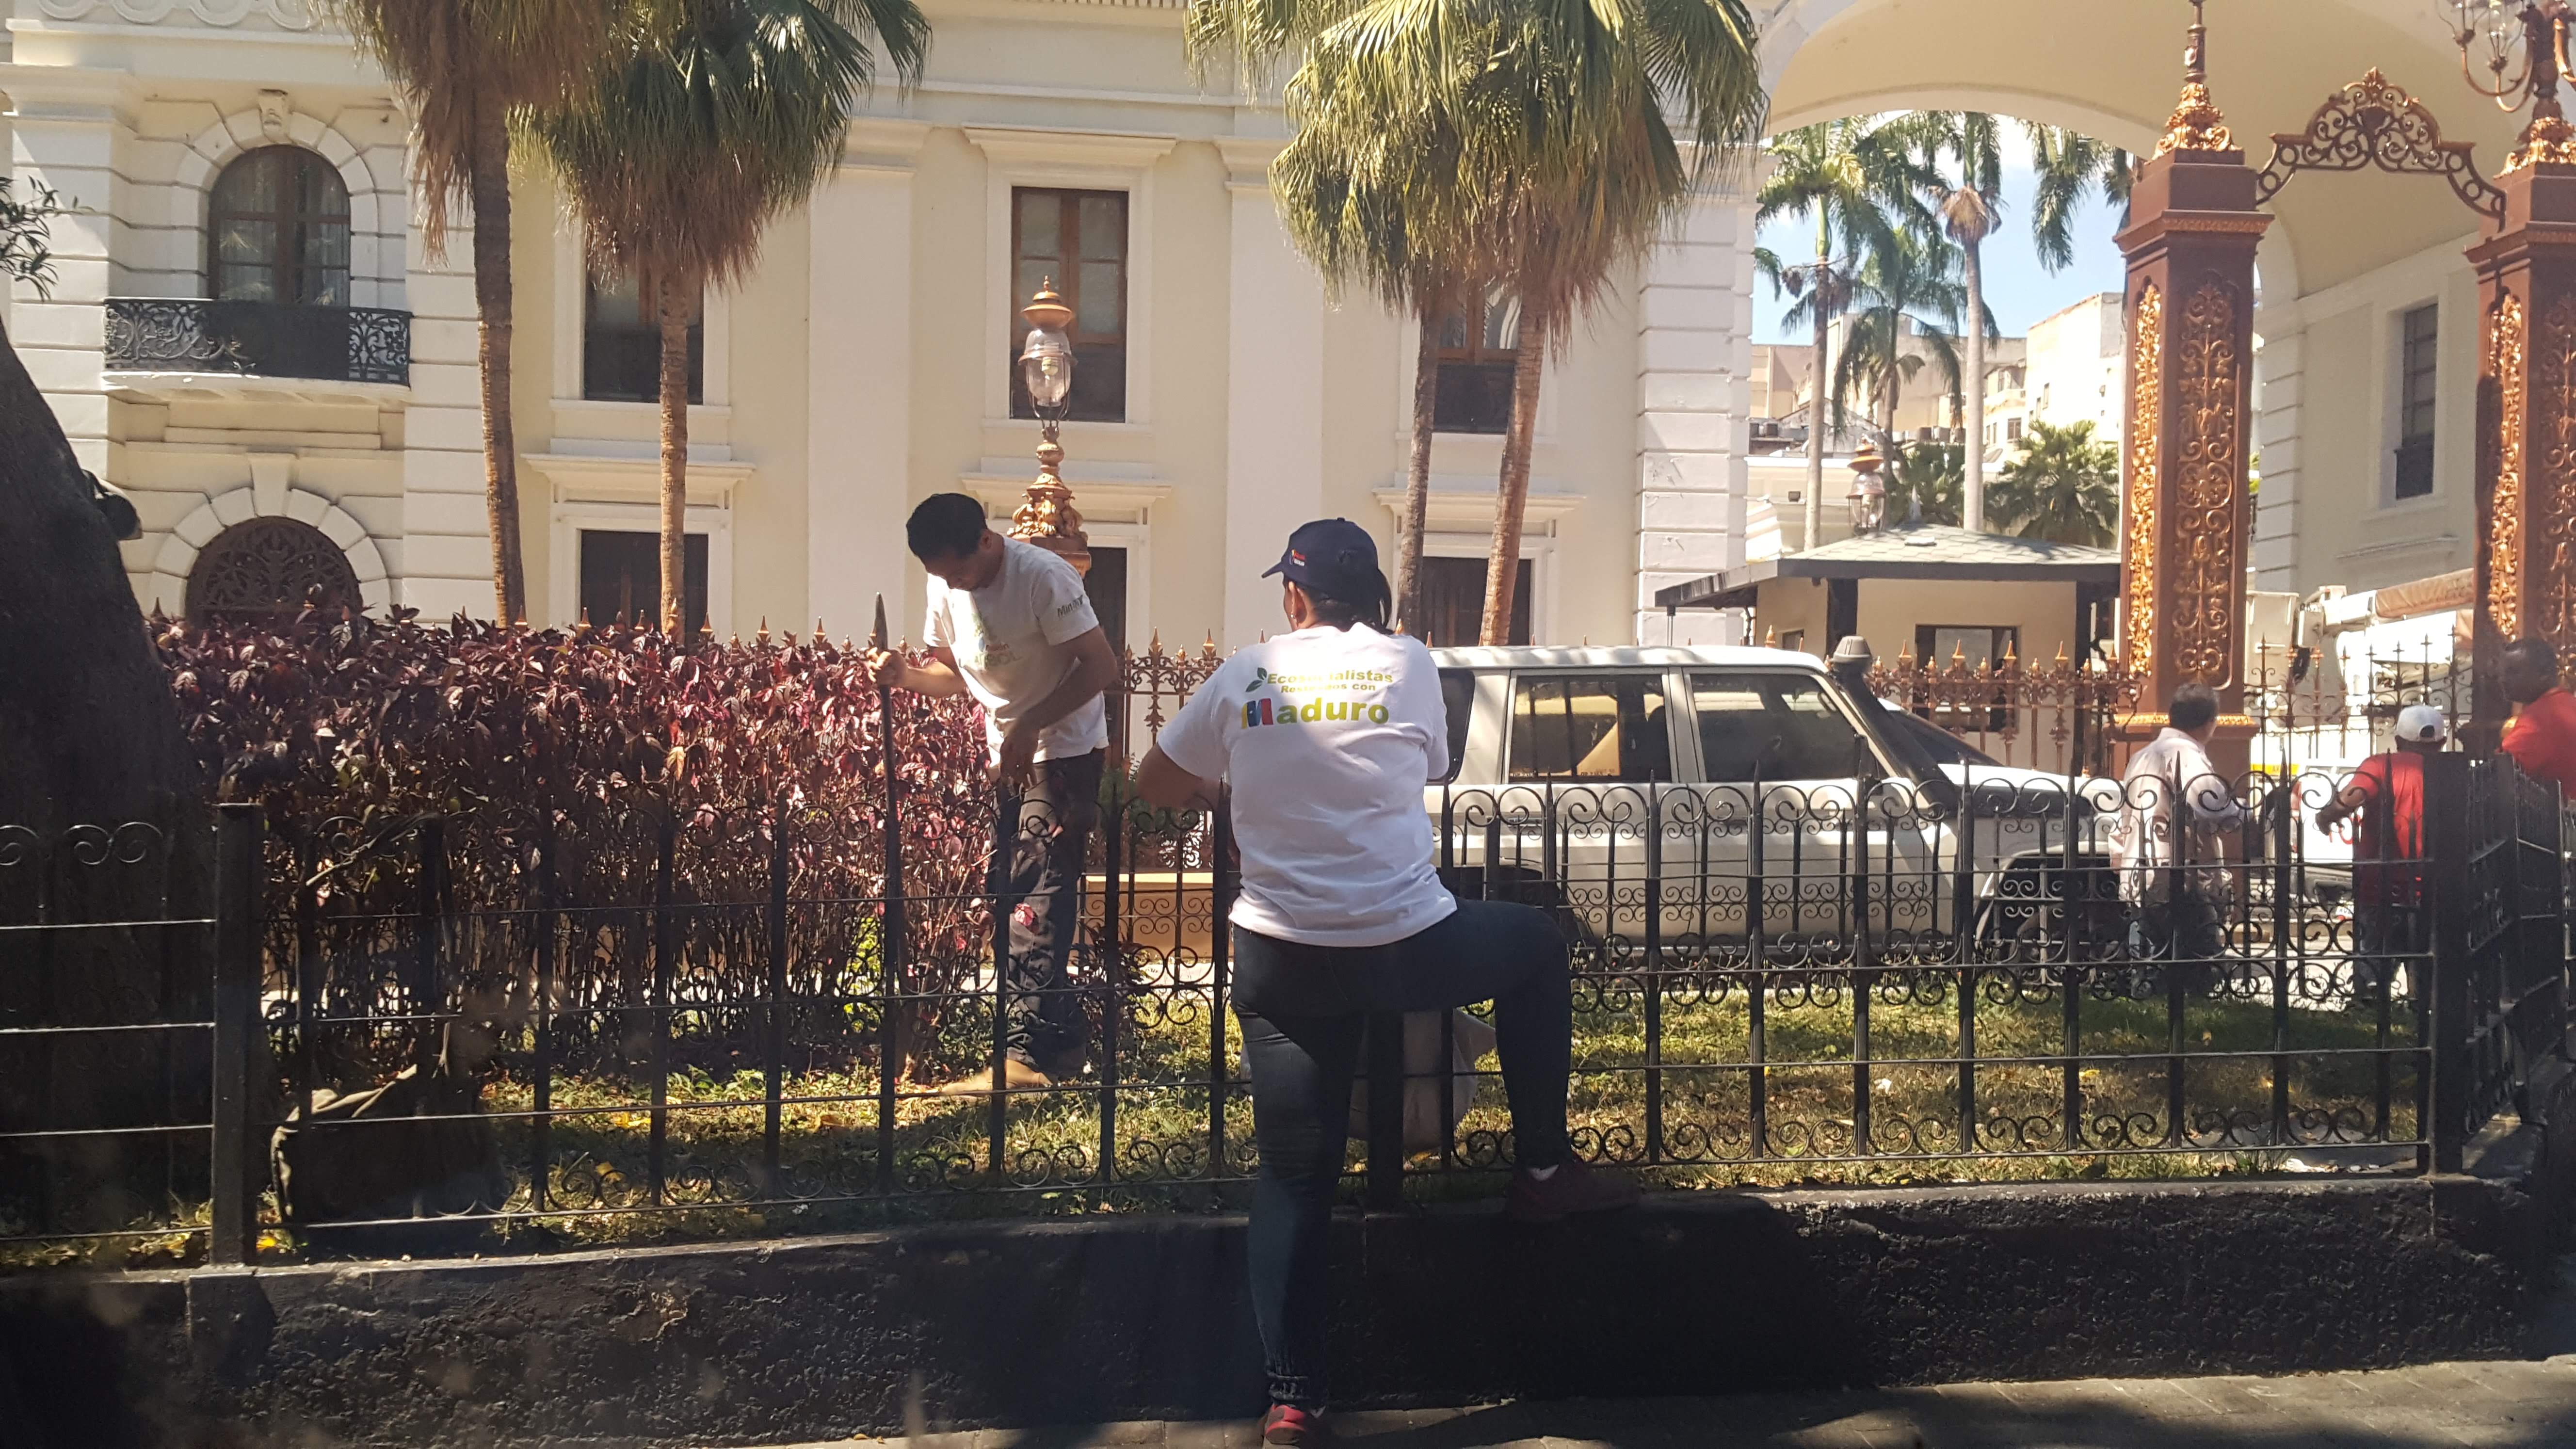 ¿Viene un Rey? Constituyente cubana limpia el Palacio Federal a días de que Maduro se juramente (Fotos y video)